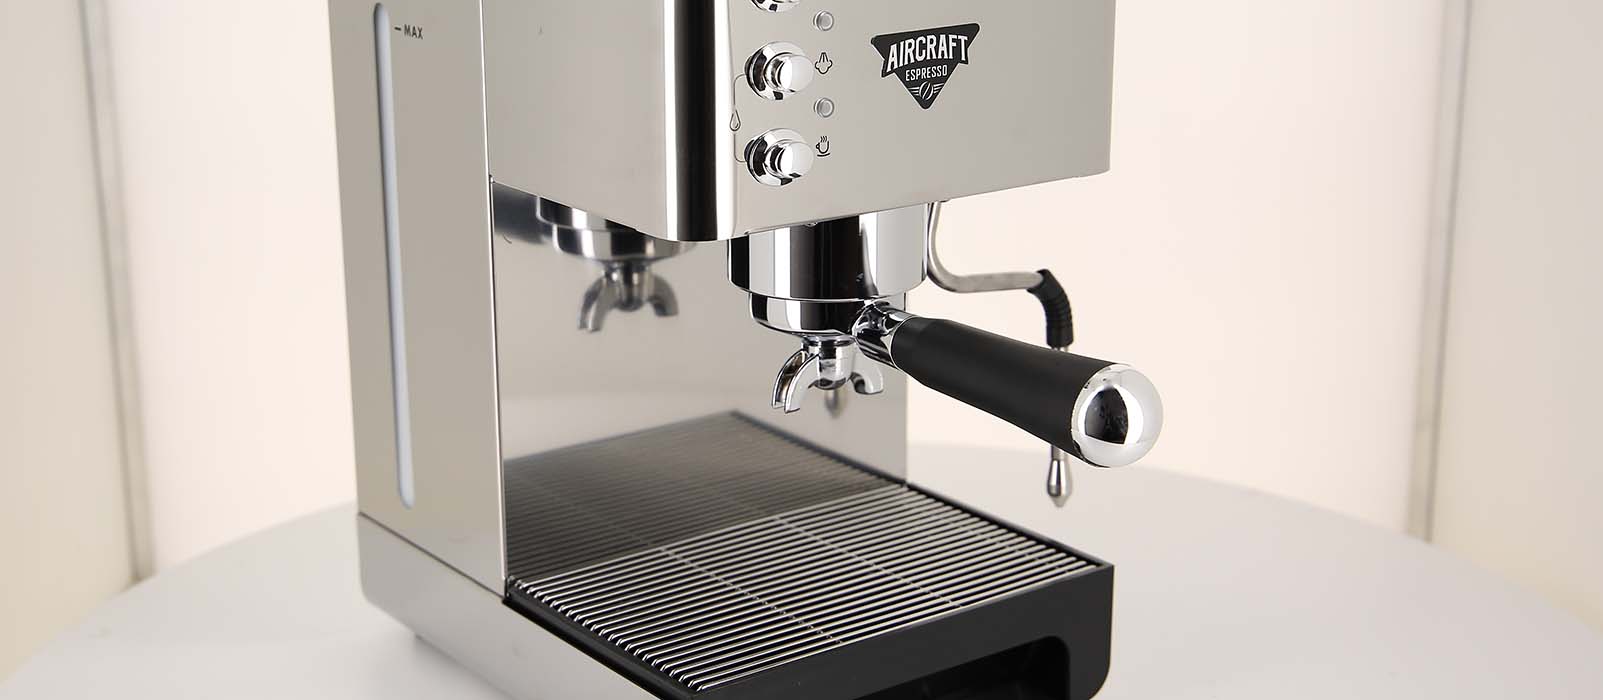 aircraft espresso machine ac 700